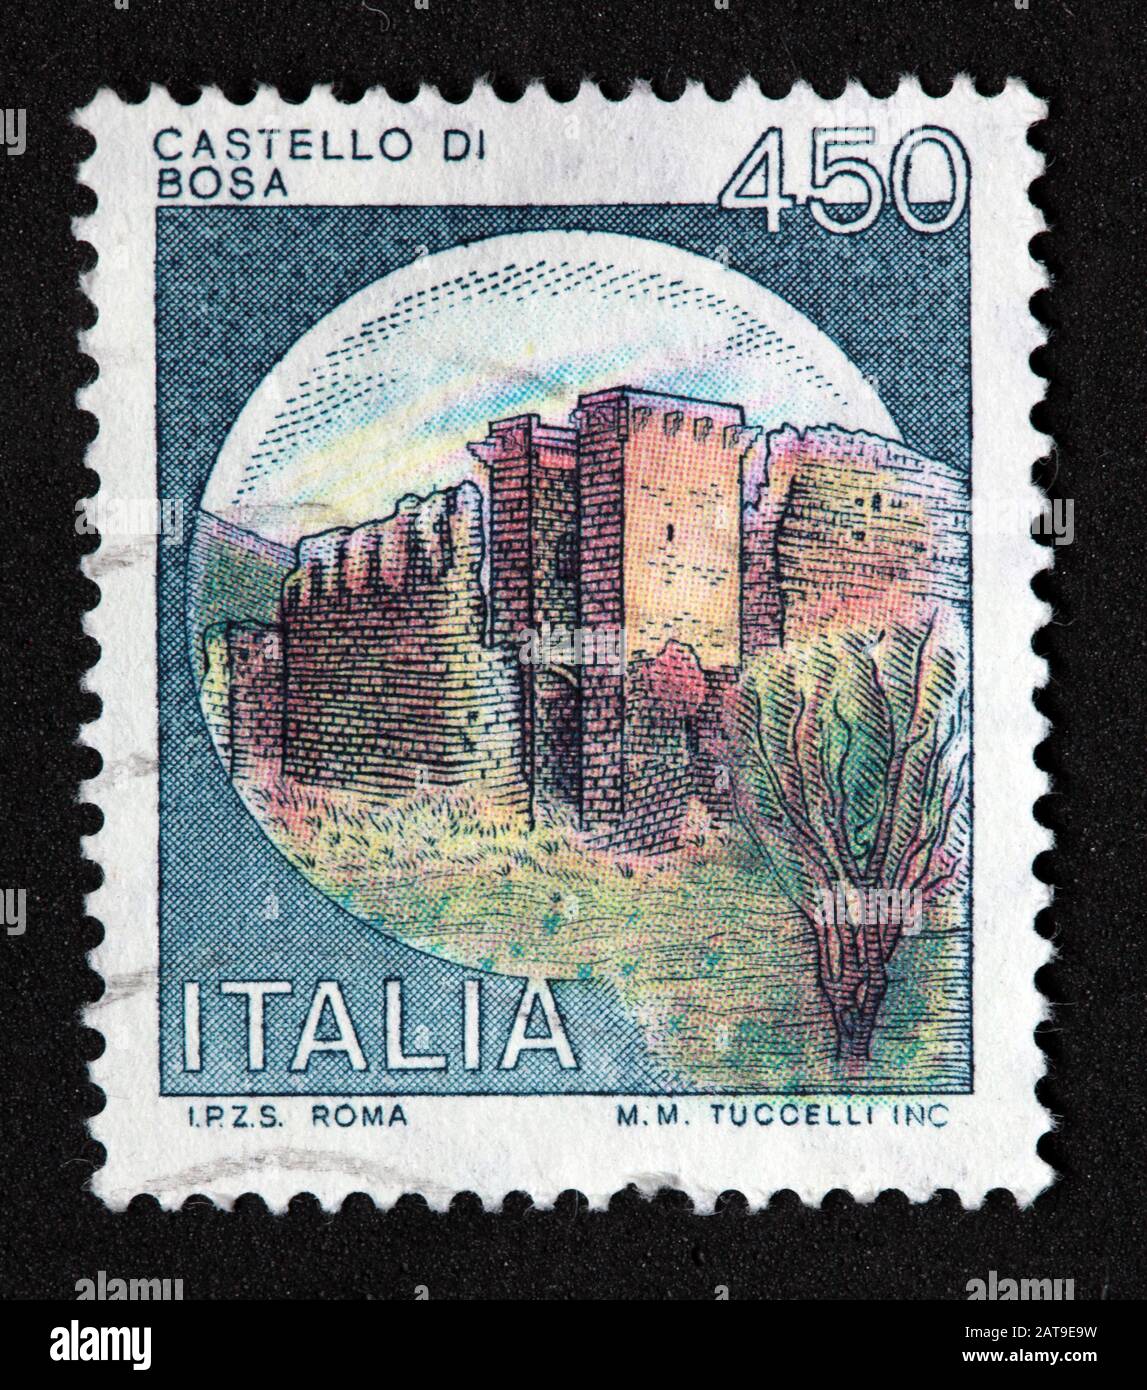 Timbre italien, cachet poste Italia utilisé et francé, châteaux d'Italie, Italia Costello Di Bosa, 450 lire M.M..Tuccelli Inc Roma Banque D'Images